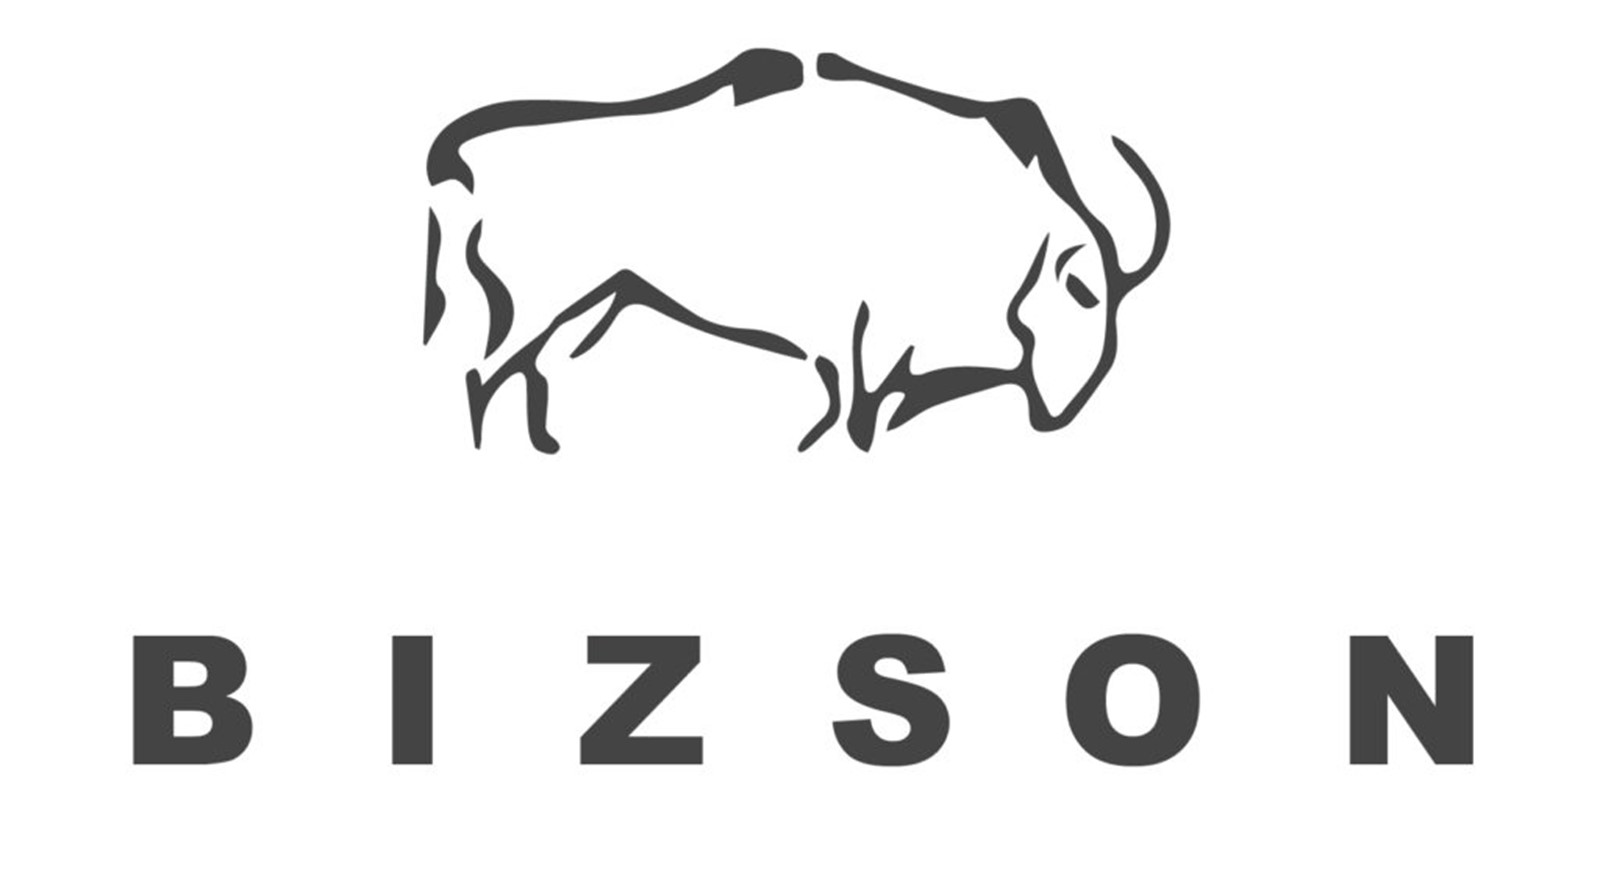 Logo de BIZSON : un bison stylisé avec les lettres BIZSON en-dessous